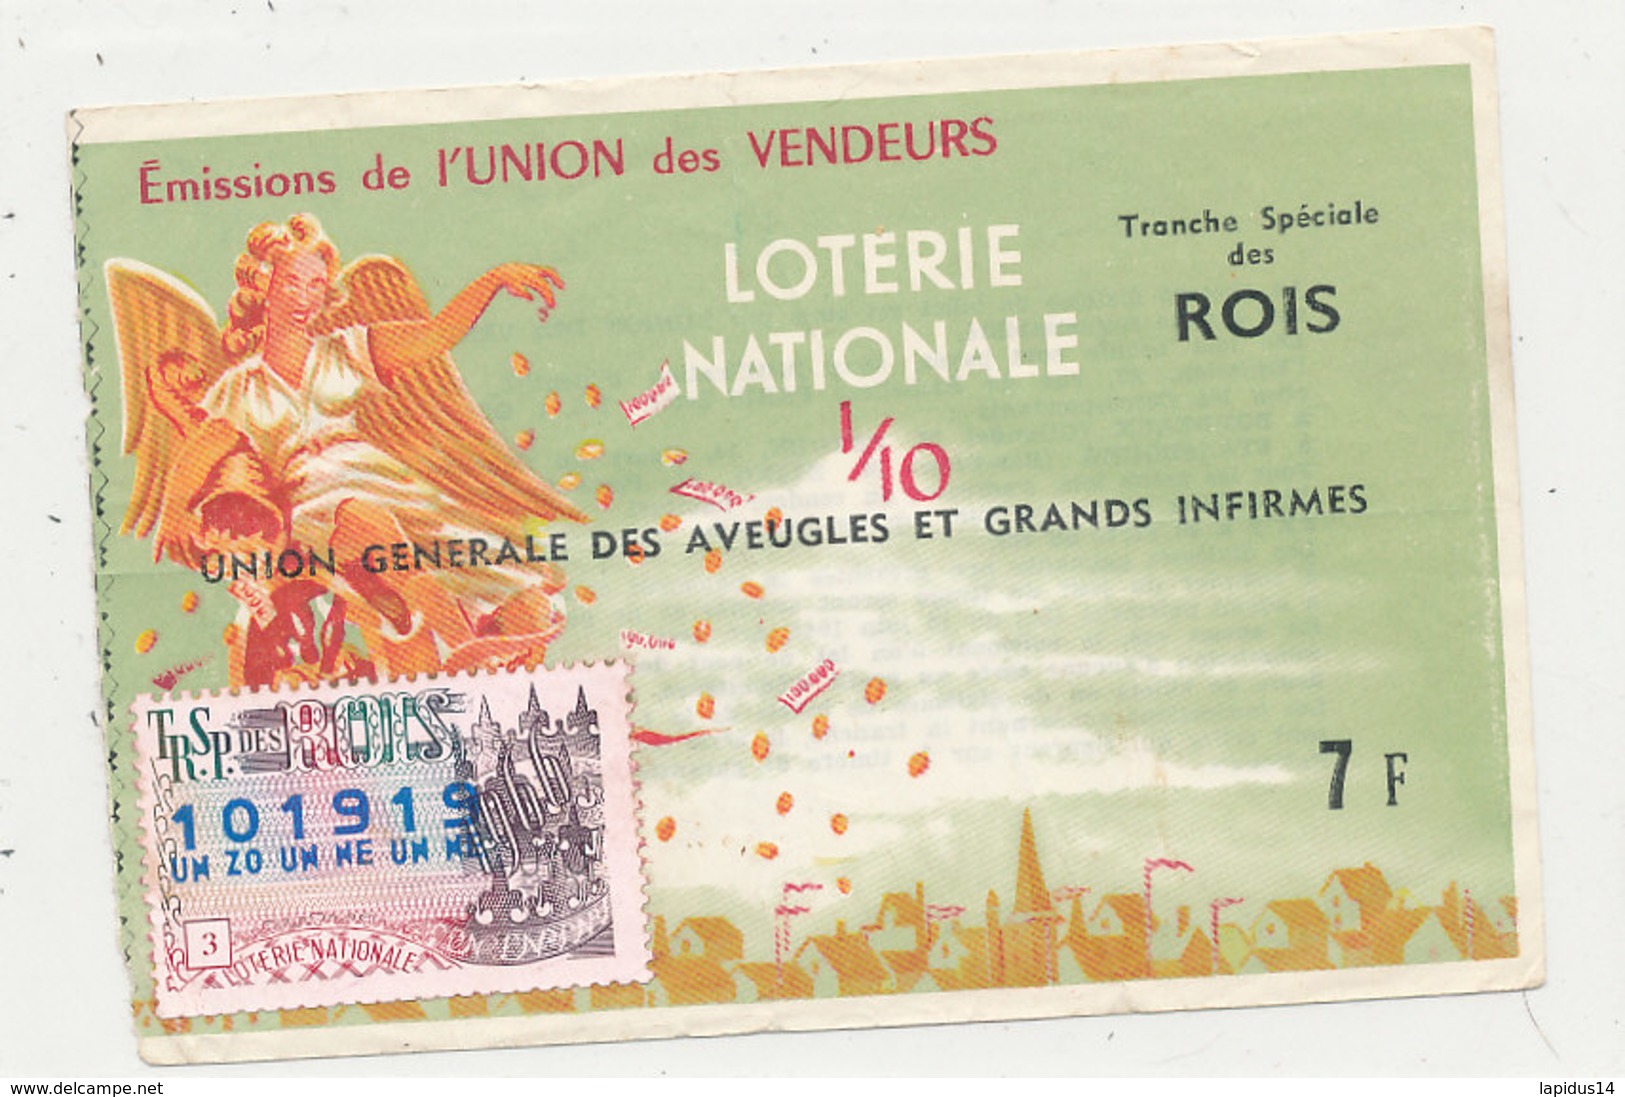 BL 159 / BILLET  LOTERIE NATIONALE   TRANCHE  DES ROIS INION GENERALE DES AVEUGLES ET DES GRANDS INFIRMES     1966 - Billets De Loterie